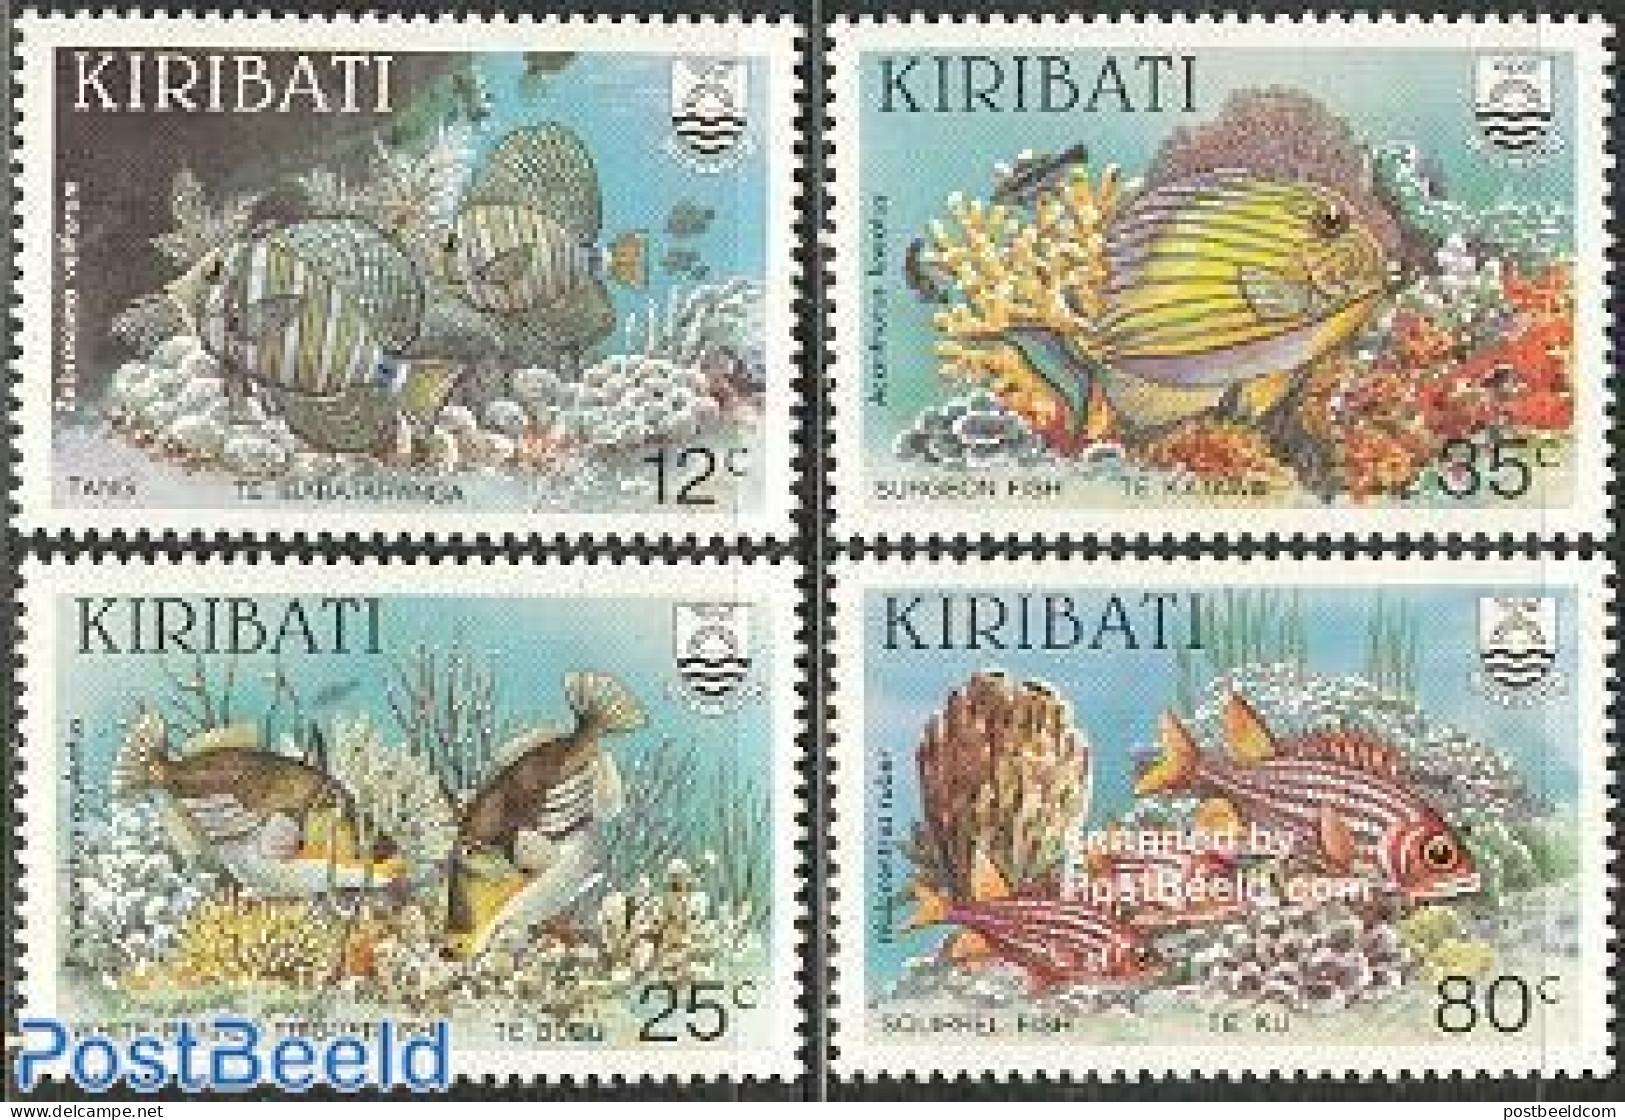 Kiribati 1985 Fish 4v, Mint NH, Nature - Fish - Fishes